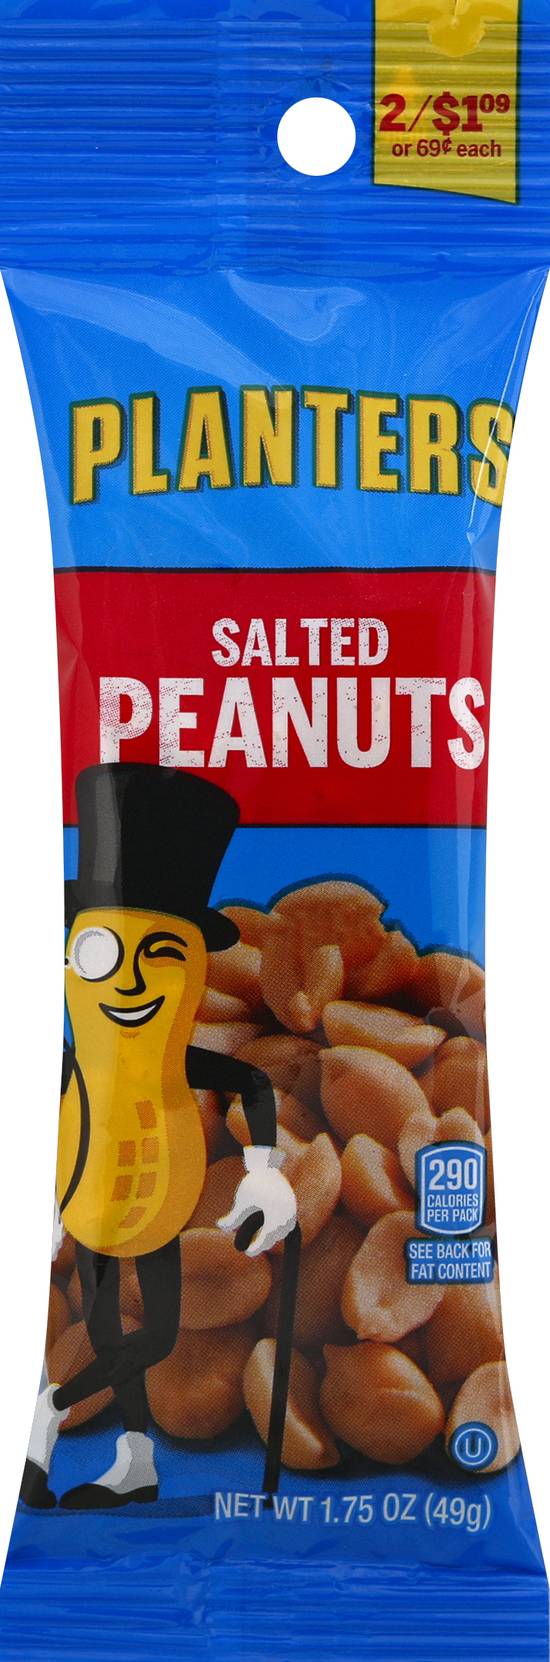 Planters Peanuts (salted )